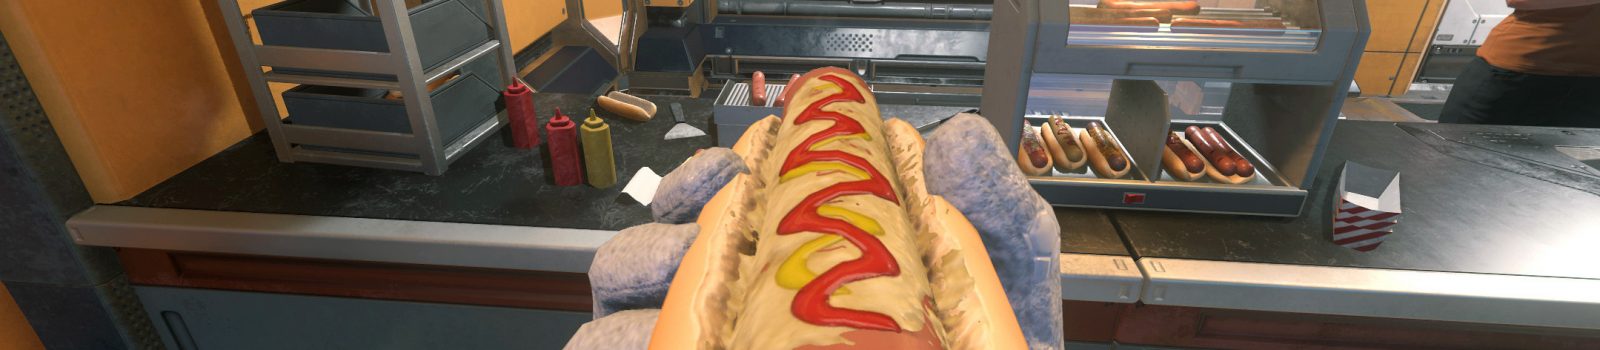 Lecker, ein Hot Dog auf MIC-L1 geht immer